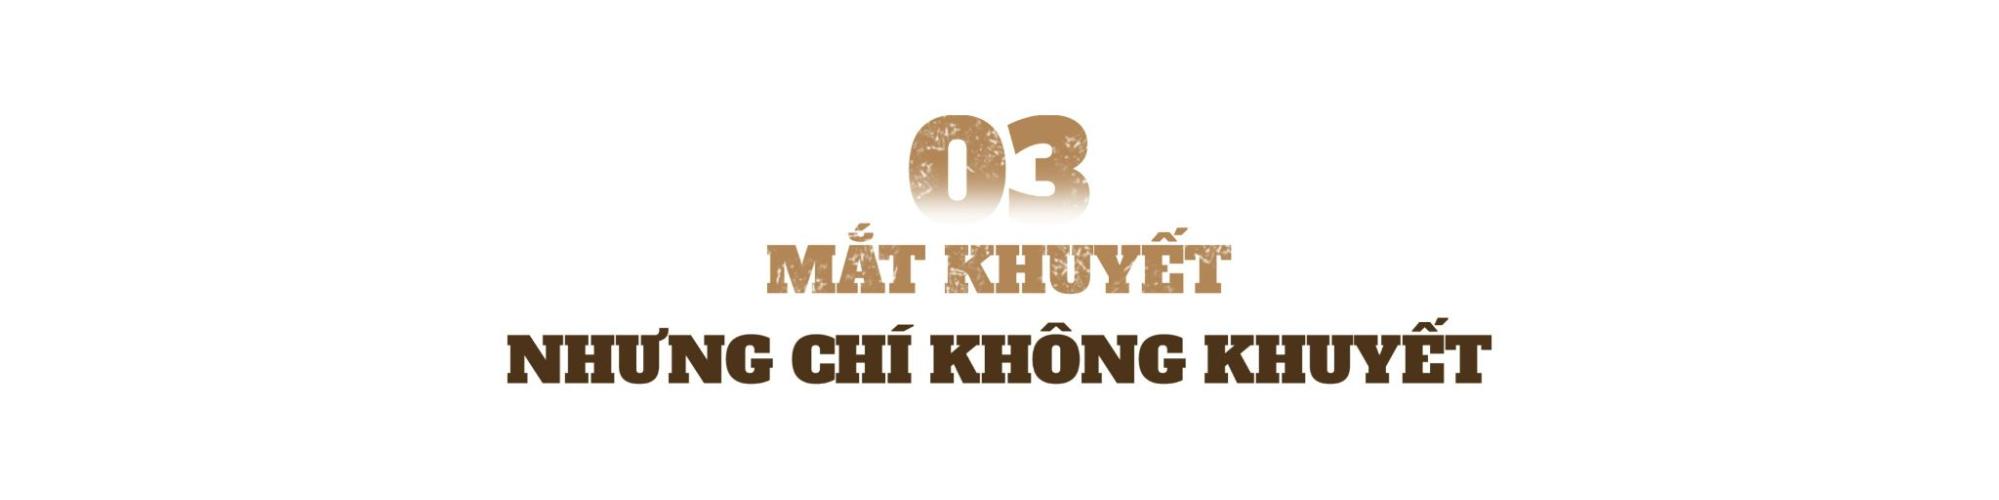 Nguyễn Thị Hồng - 